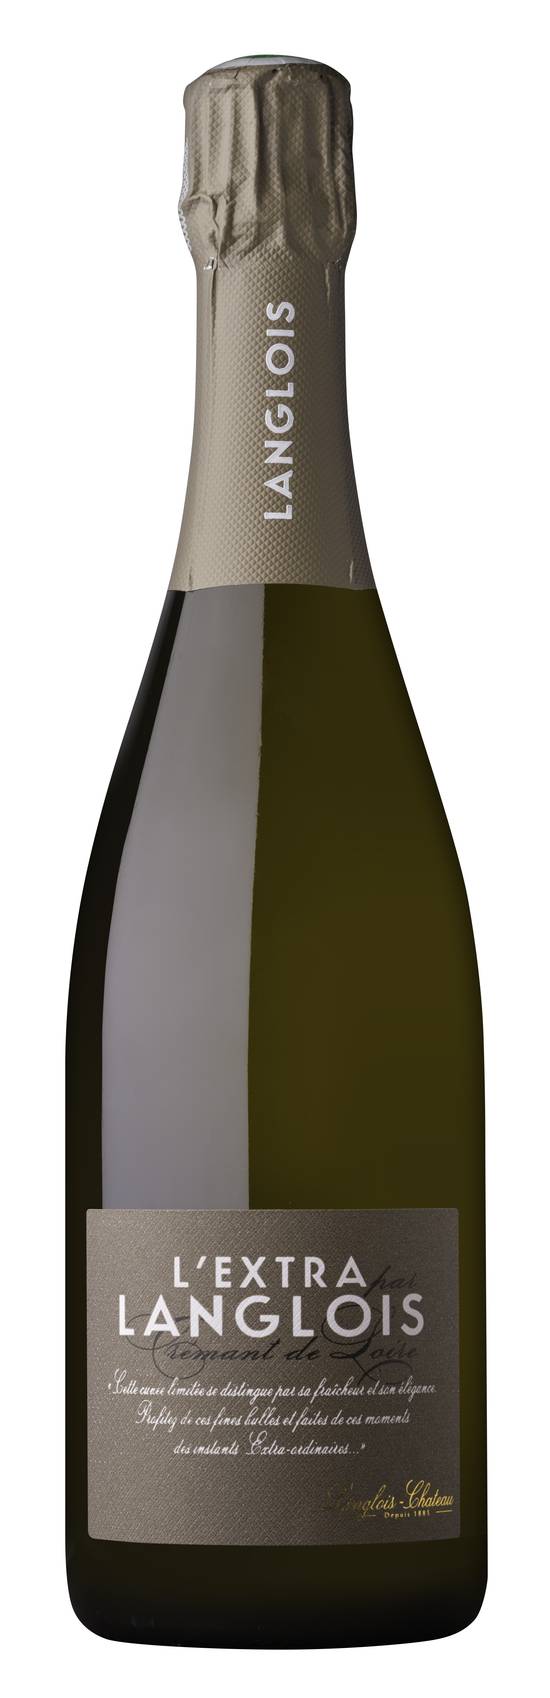 Langlois-Château - Vin blanc l'extra crémant de Loire (750 ml)